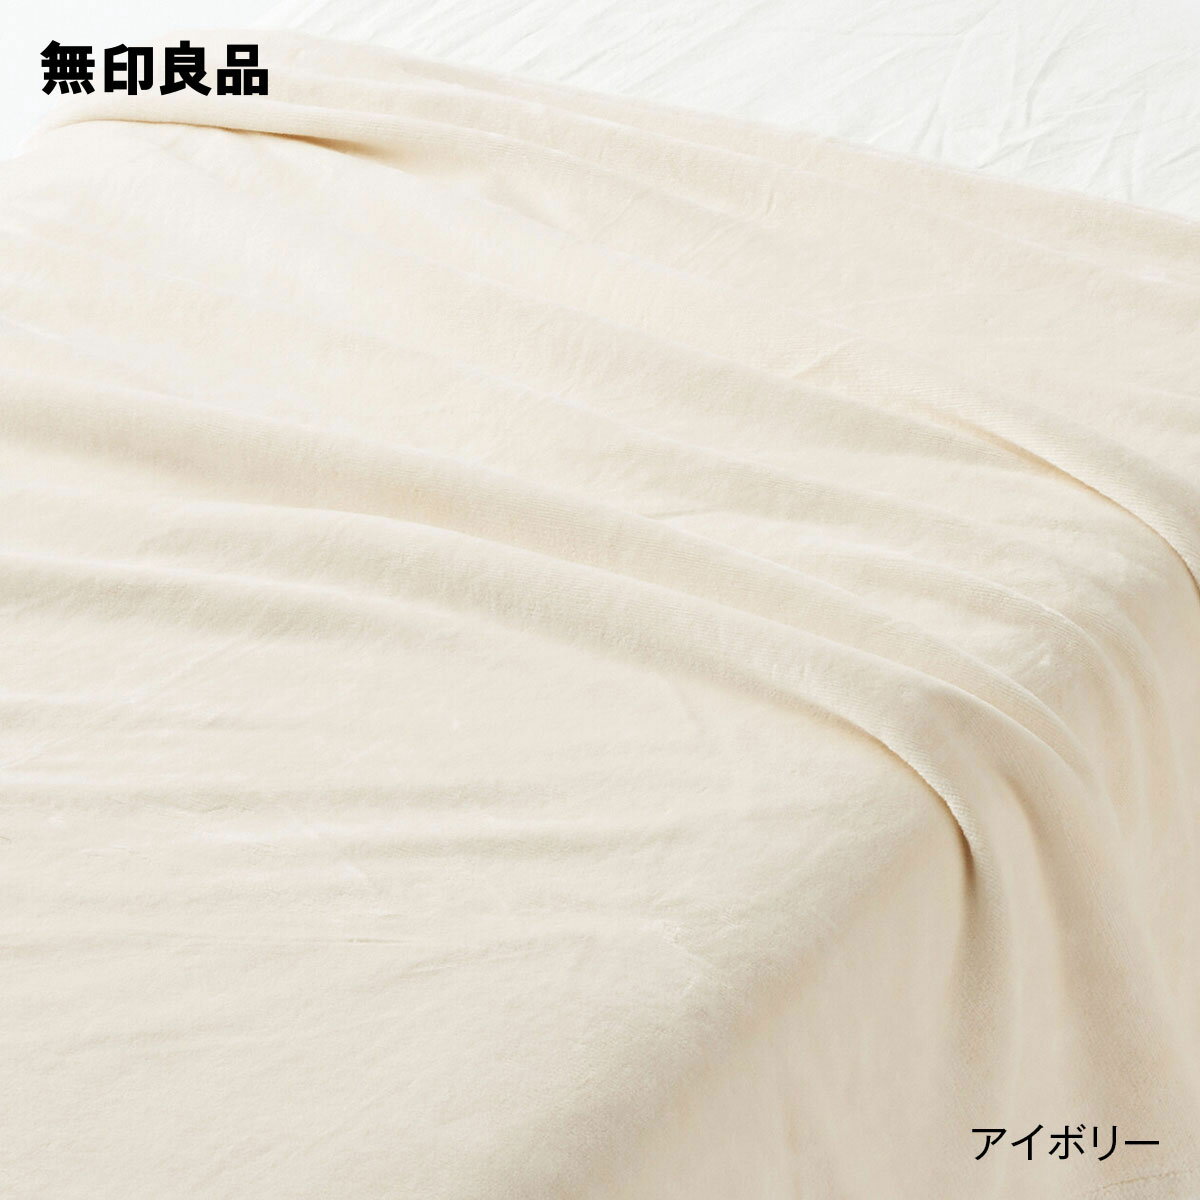 【無印良品 公式】【シングル】あったか綿 毛布・140 200cm